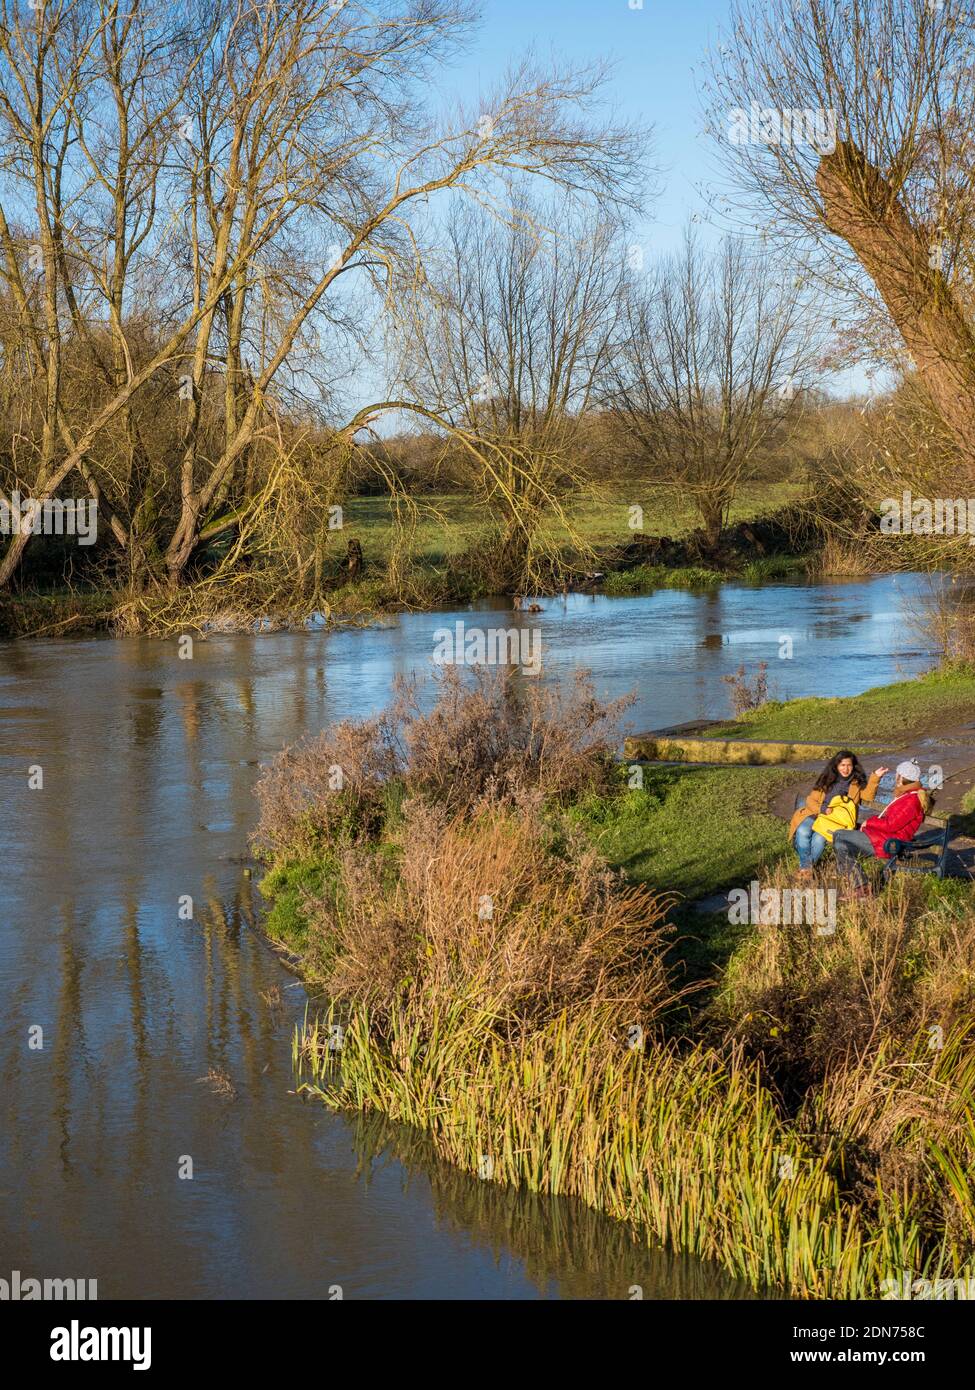 Amici seduti sulle rive del Tamigi, Thames Path, Oxford, Oxfordshire, Inghilterra, Regno Unito, GB. Foto Stock